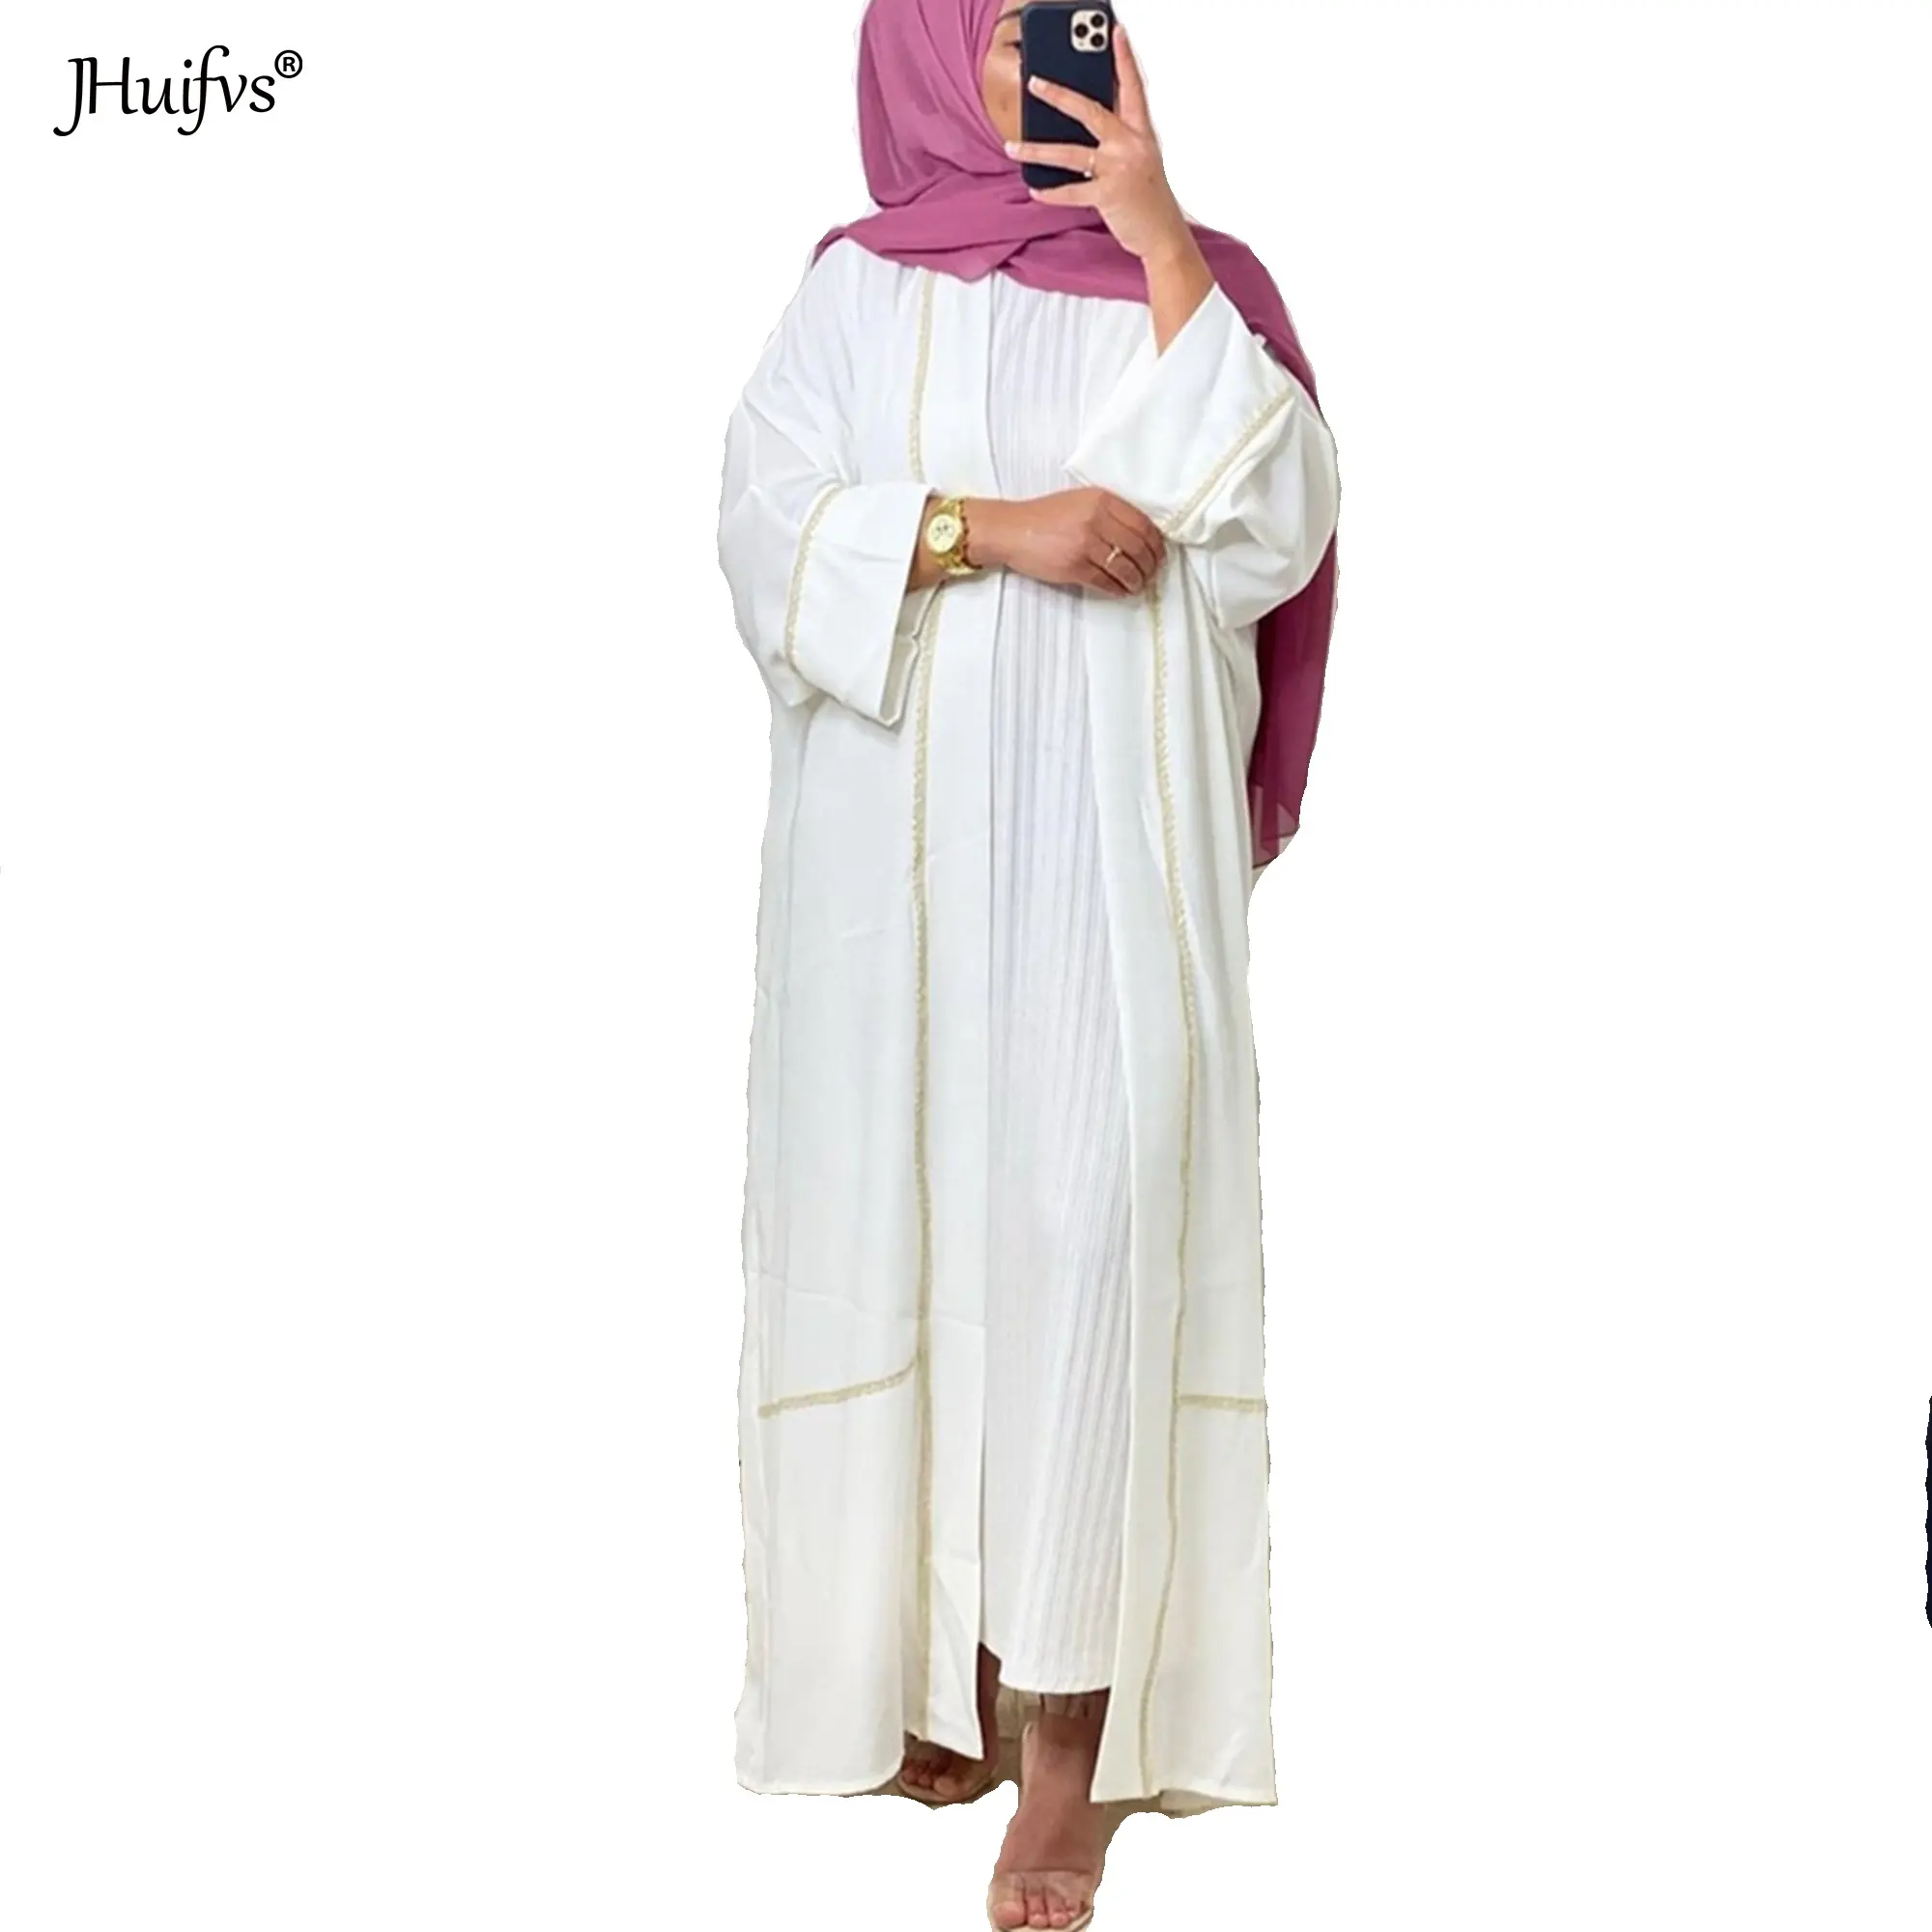 2021 nuovo Arrivo Delle Signore di Modo di Disegno Della Cinghia Apri Cardigan Vestito Abaya Hijab Musulmano Donne Islamiche Lungo Caftano Kimono